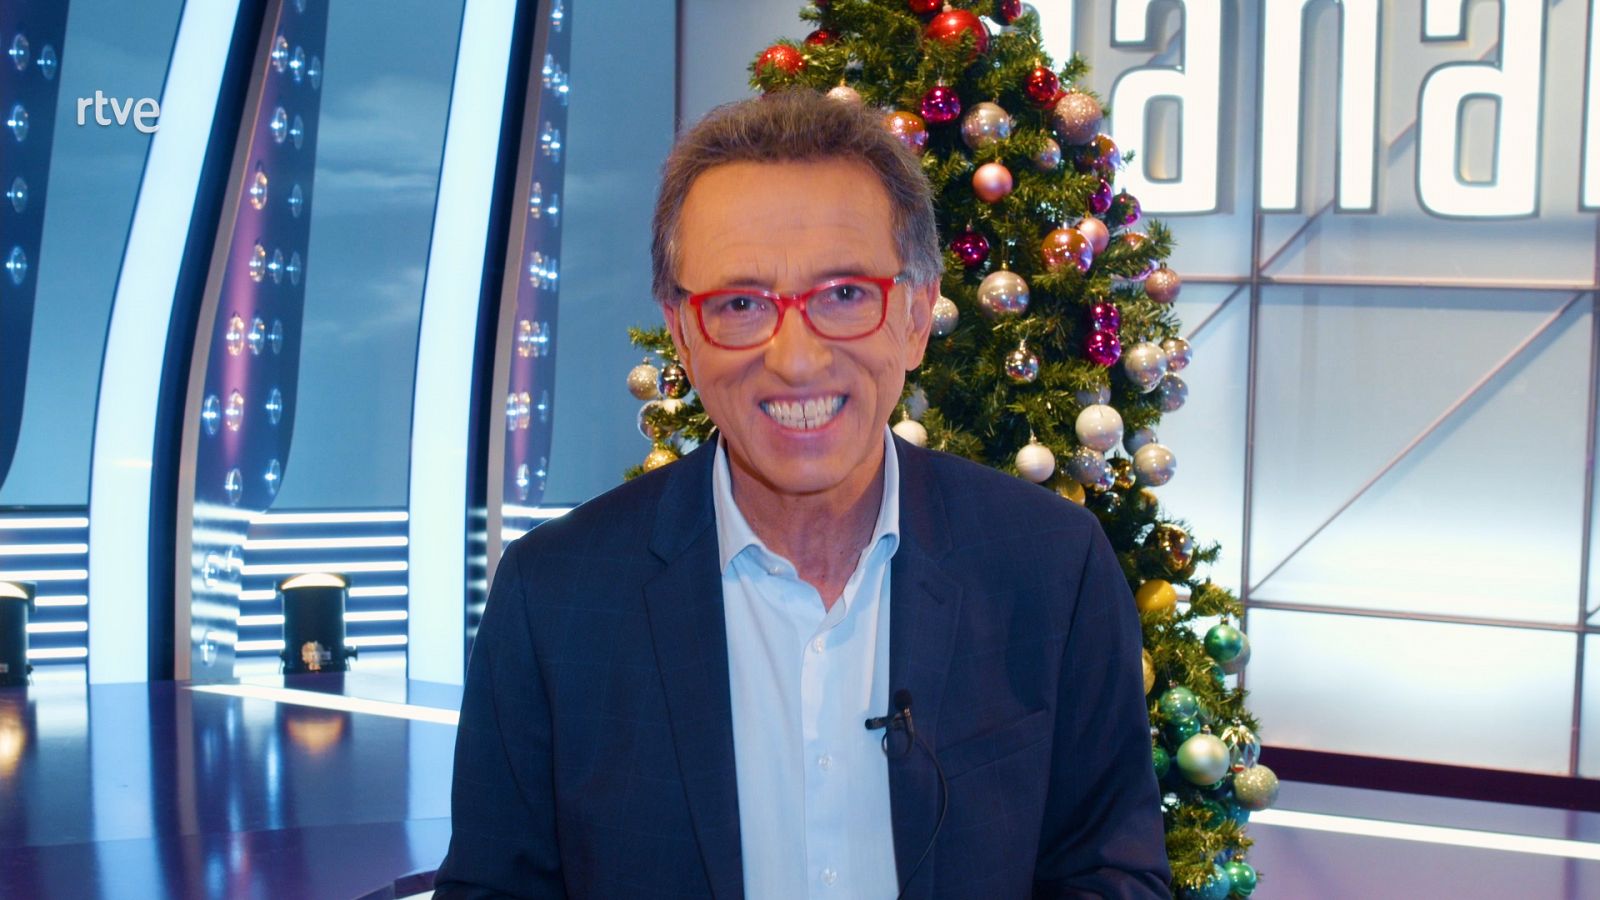 Lotería de Navidad 2021 - ¿Abandonará Jordi Hurtado "Saber y Ganar" si le toca la lotería? - Ver ahora